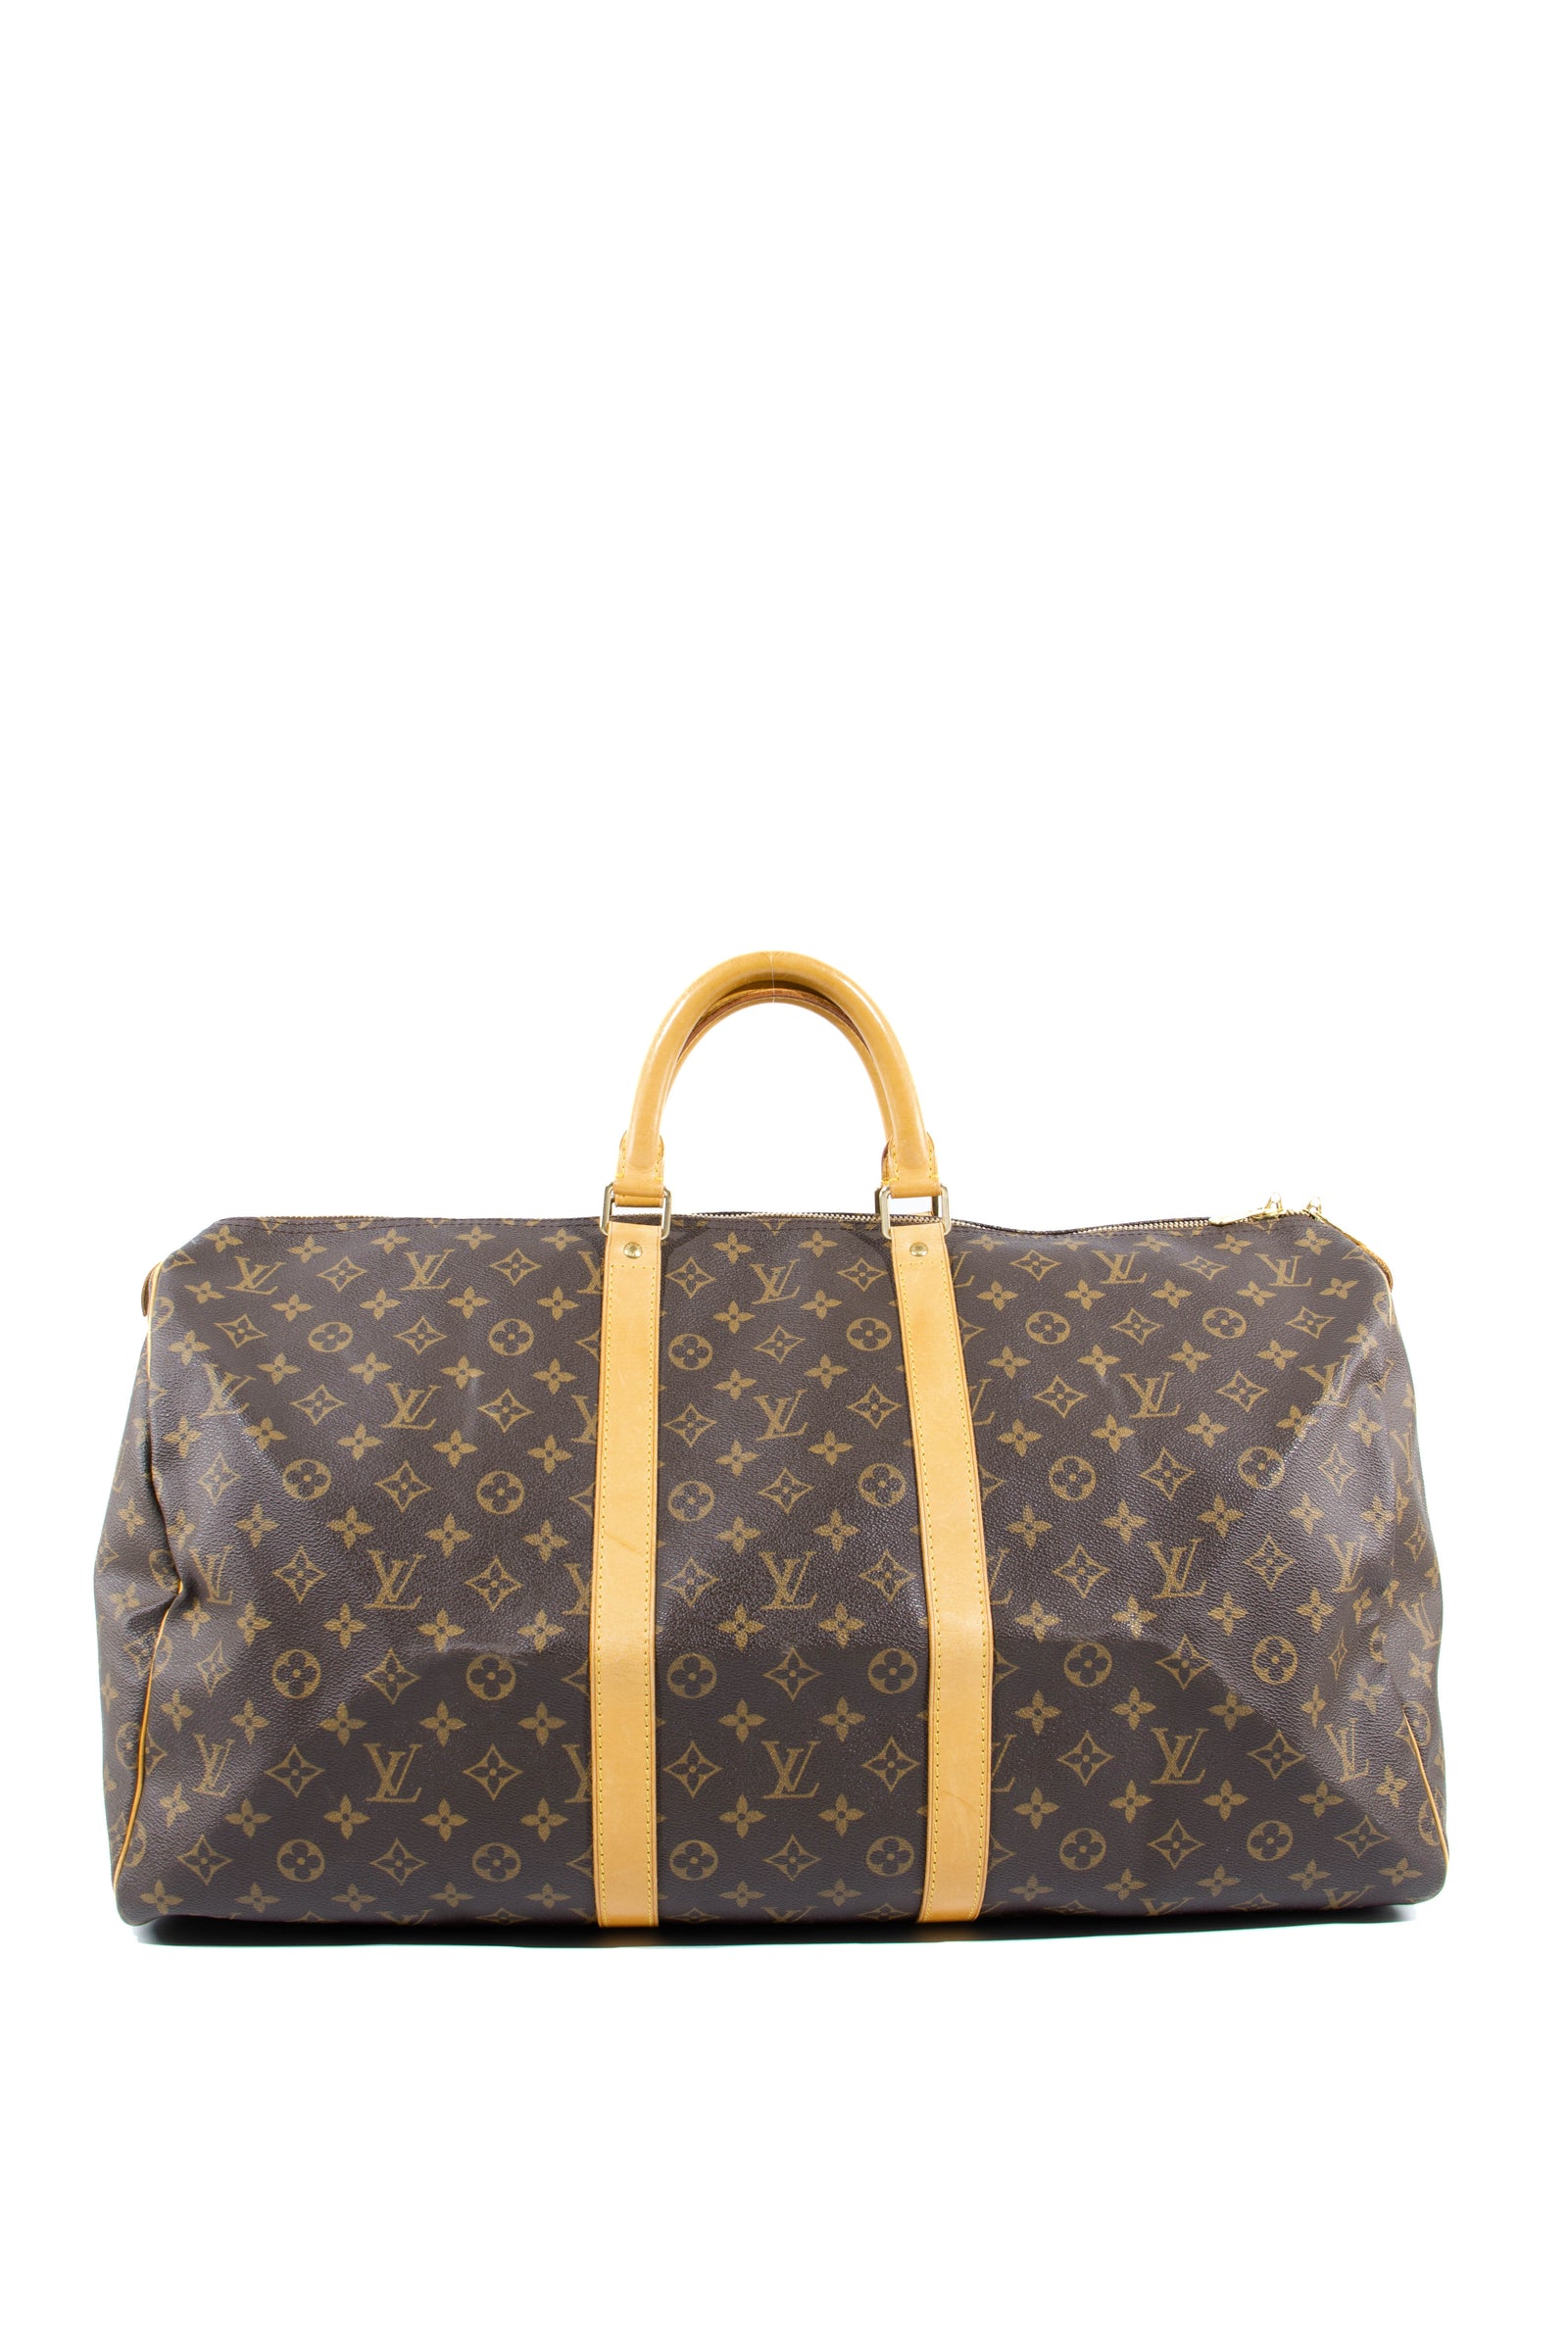 Lot - Louis Vuitton Monogram Keepall 55 Bag, Length of zipper